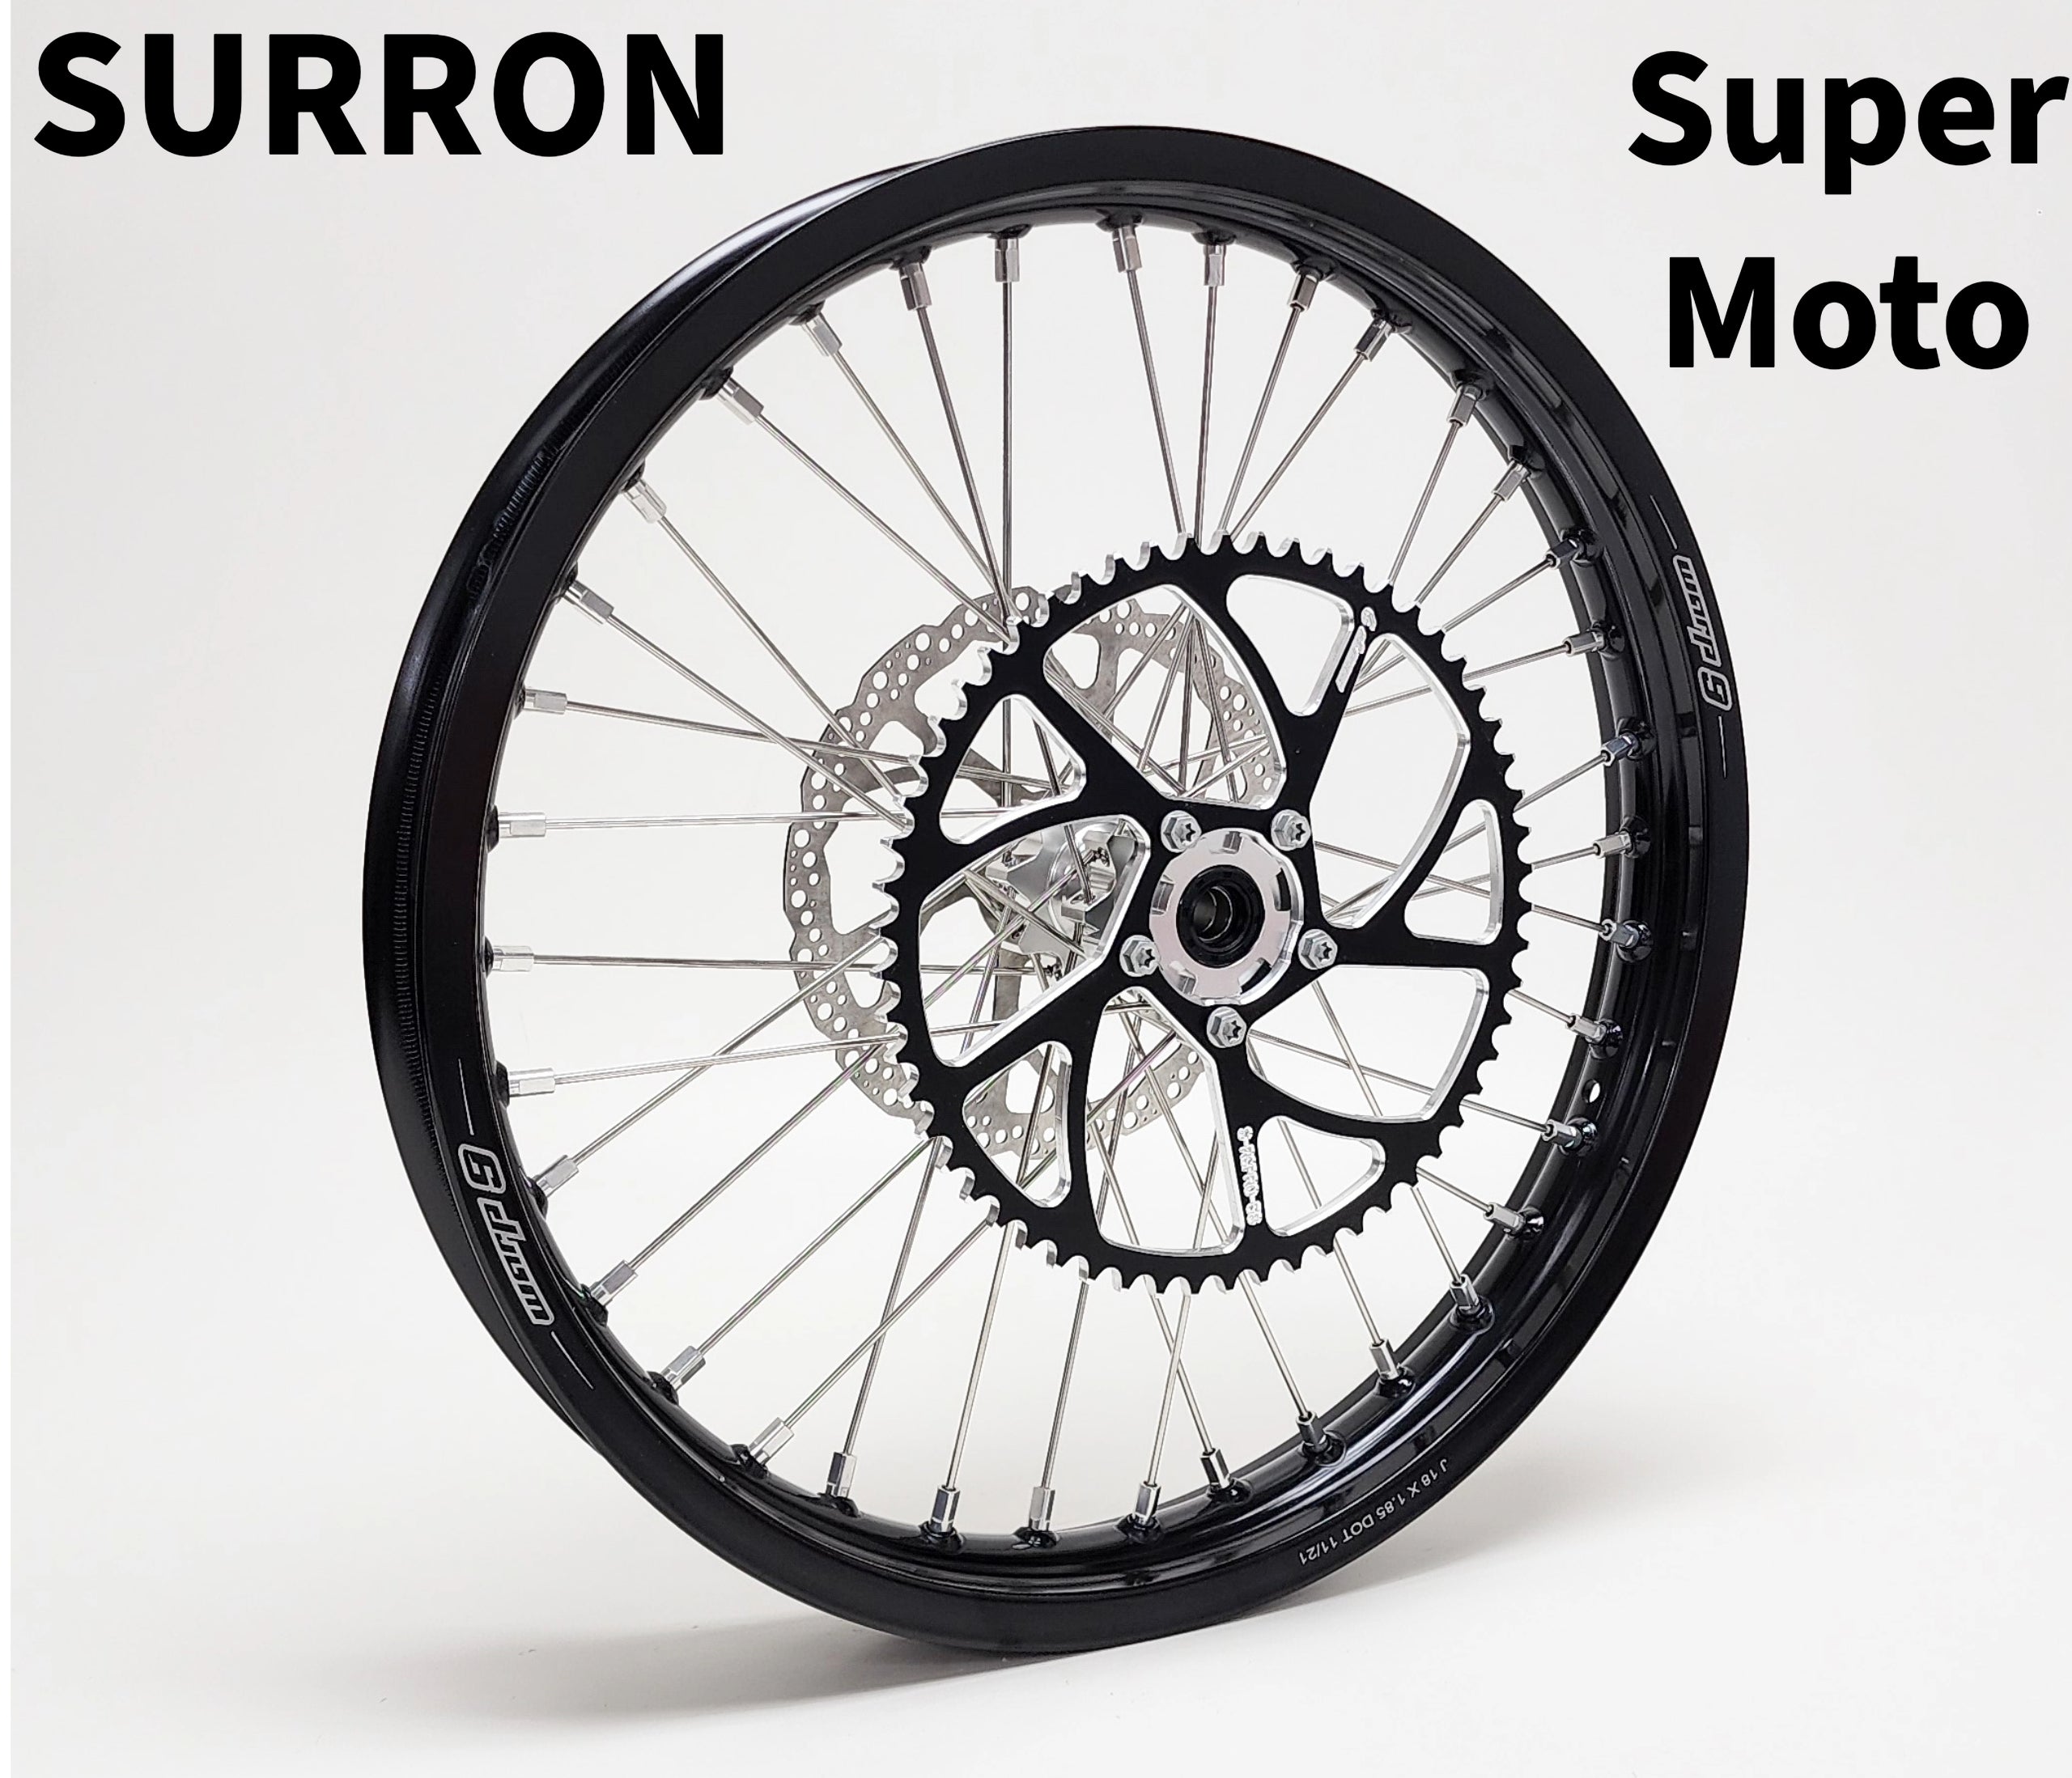 Warp 9 Complete 17in Super Moto Wheel Set for Surron/ E-Ride Pro/79 Bike